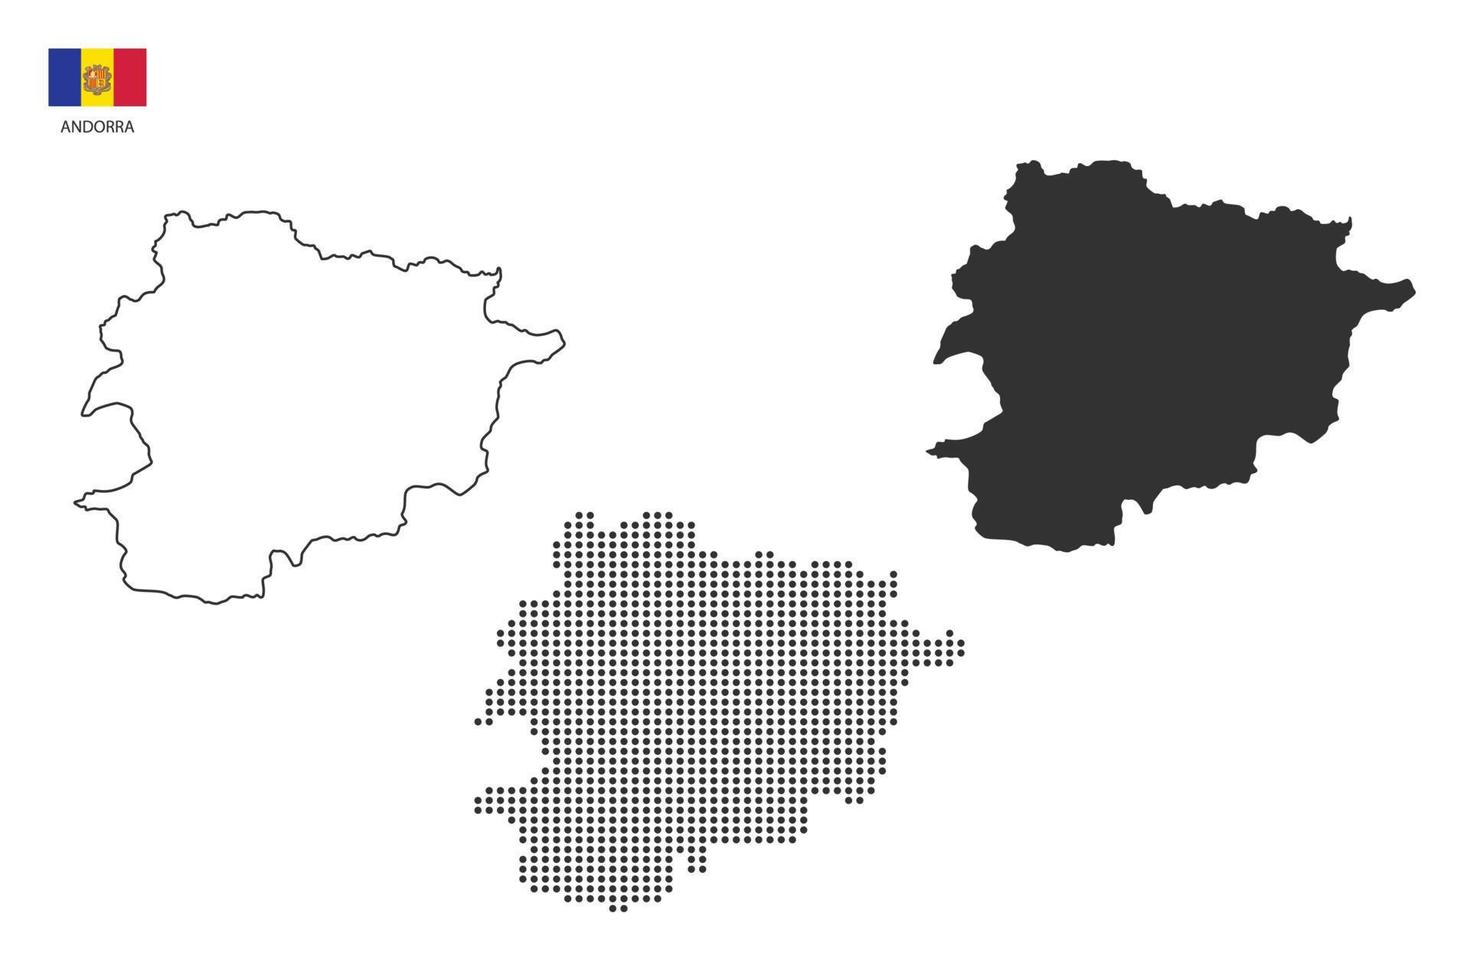 3 versões do vetor da cidade do mapa de Andorra por estilo de simplicidade de contorno preto fino, estilo de ponto preto e estilo de sombra escura. tudo no fundo branco.